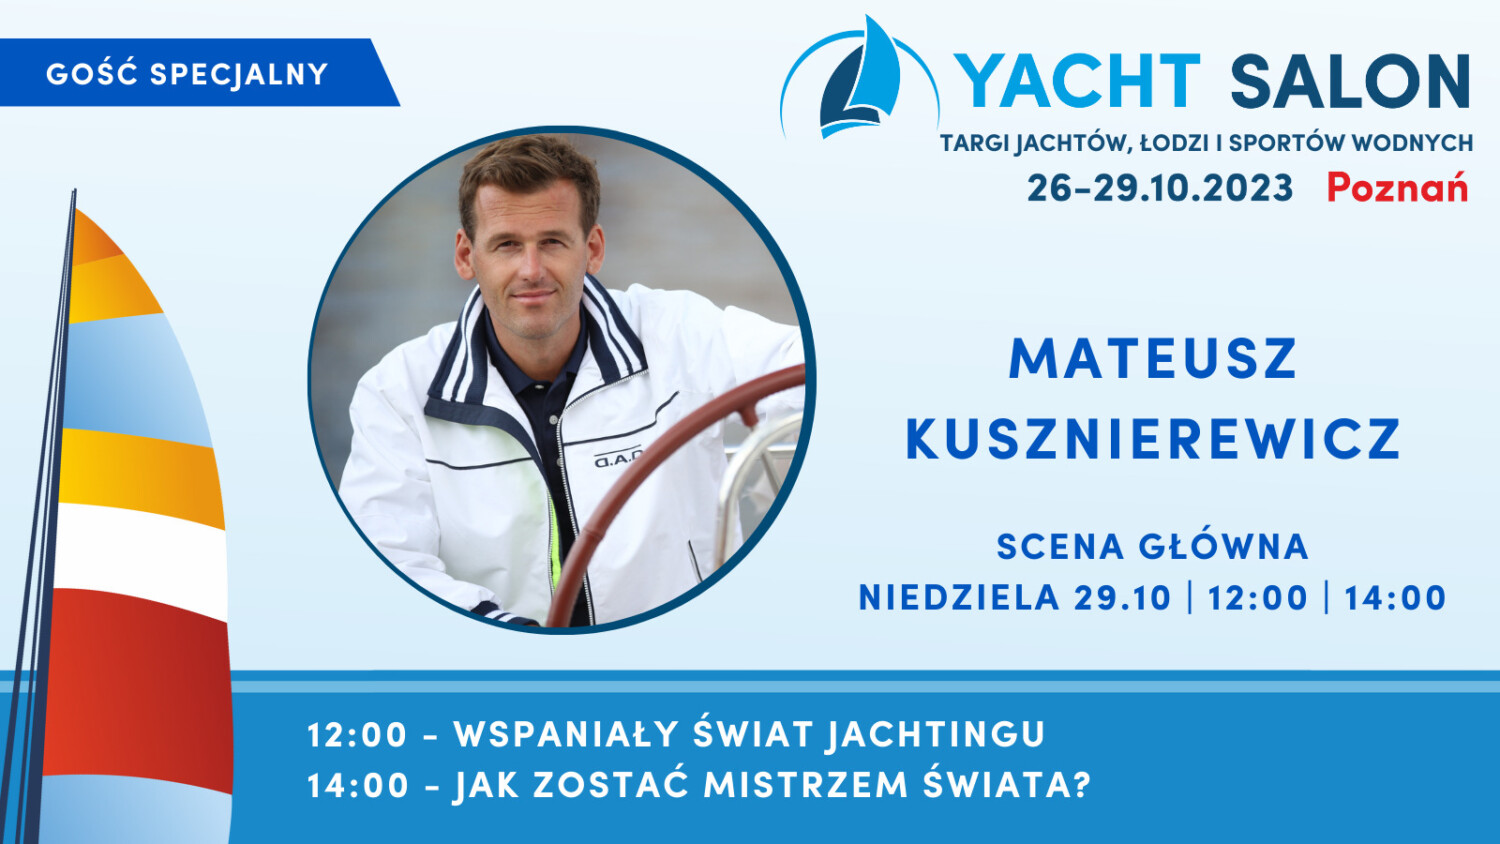 yacht salon 2023 poznań Mateusz Kusznierewicz